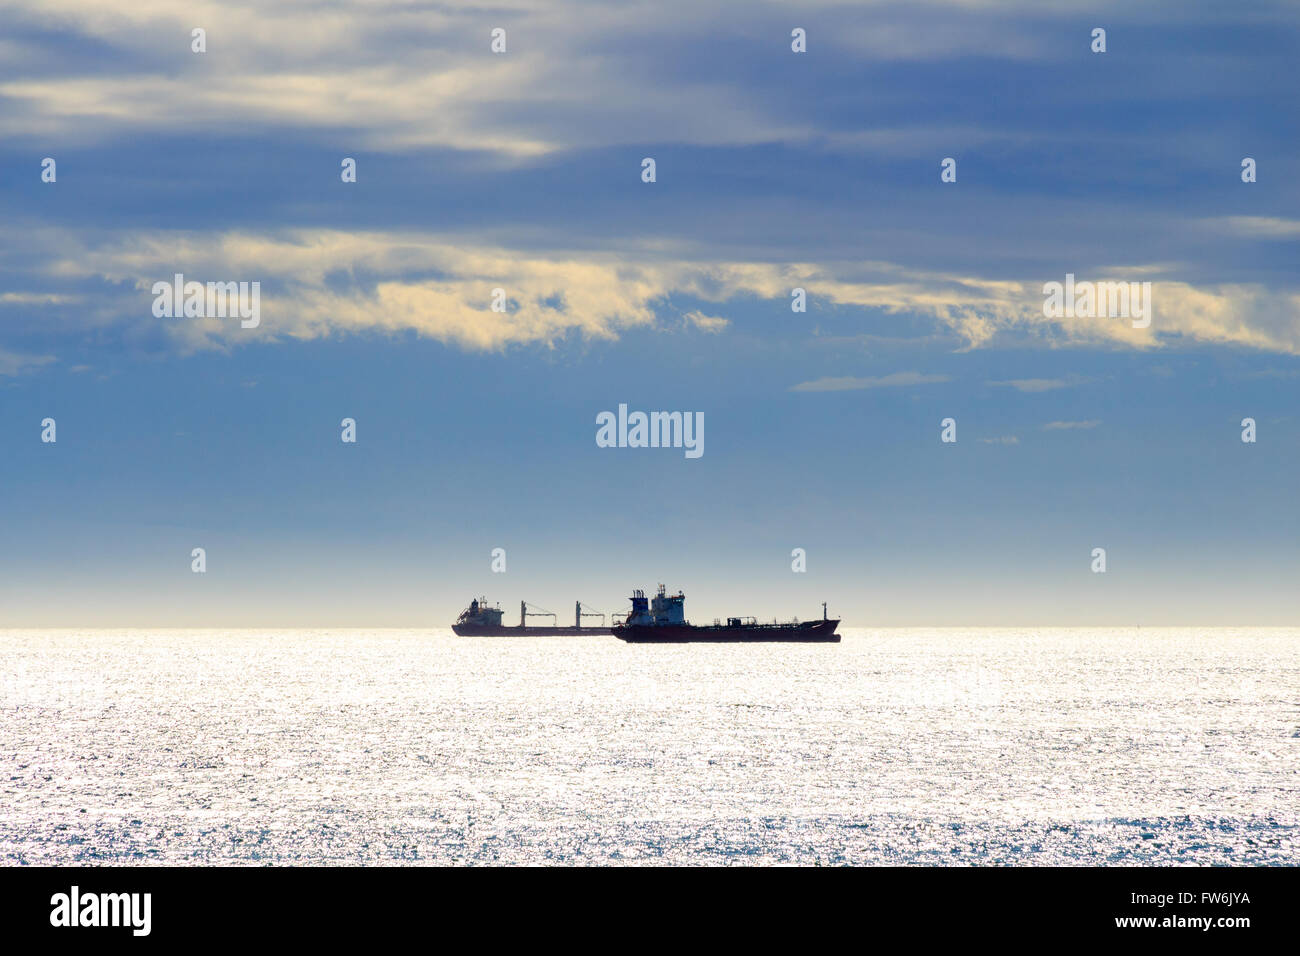 Bulk-carrier ship on the sea Stock Photo